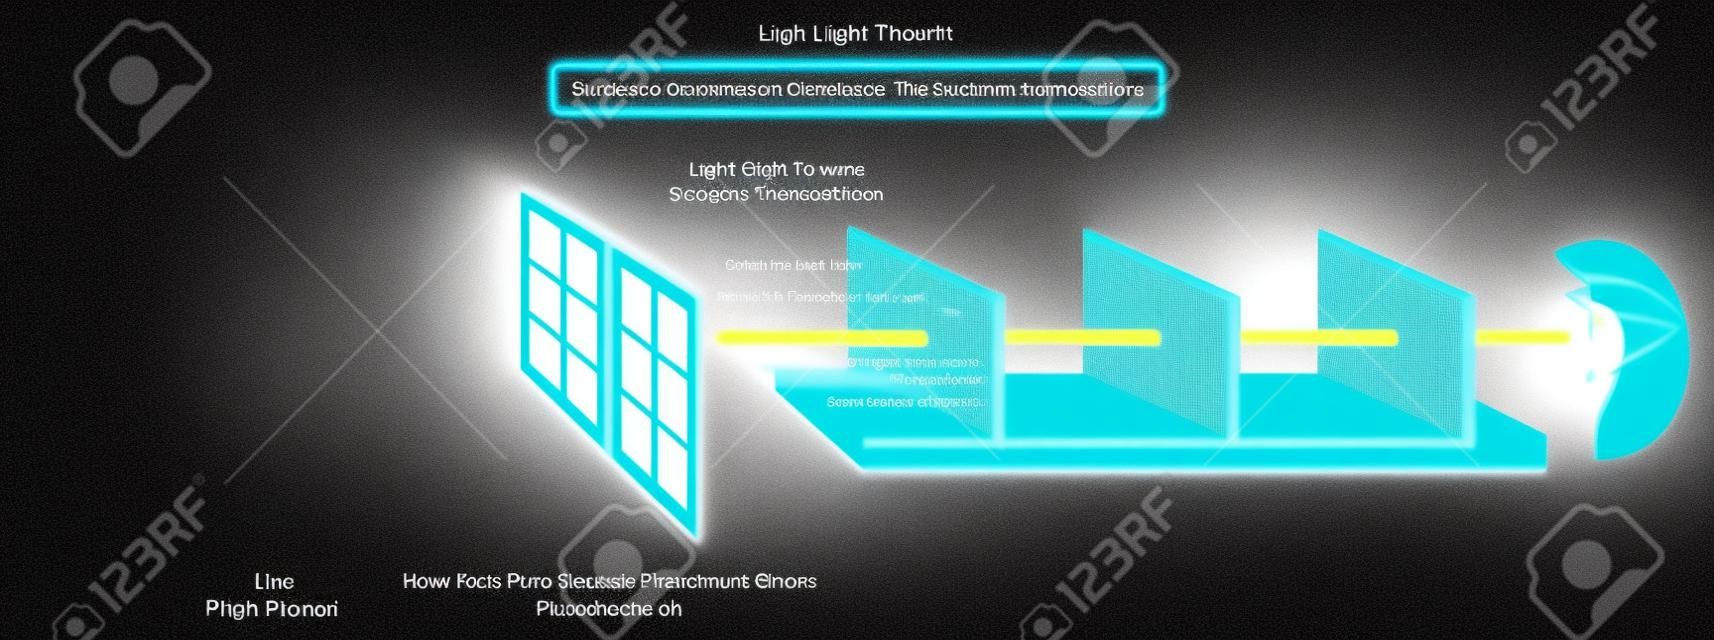 光源の太陽と光線が物理学科学教育のために直線で透明なオブジェクトウィンドウガラスを通過する様子を示す光の移動インフォグラフィック図